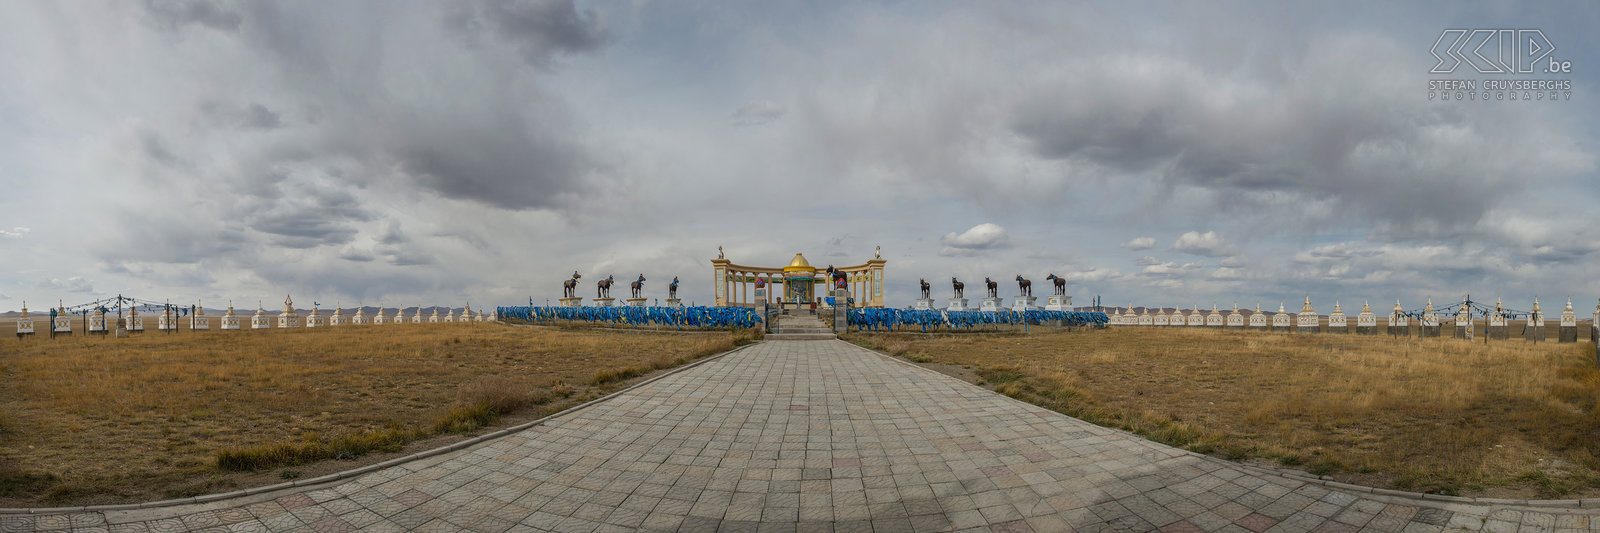 Arvaikheer - Paardenmonument Arvaikheer is een van de meest centraal gelegen steden van Mongolië. De naam is een verkorte versie van de naam van een beroemd racepaard, Arvagarkheer. Dit was het snelste paard in een zeer belangrijke race op het einde van de 18e eeuw. Recentelijk is het paarden herdenkingsmonument ‘Morin Tolgoe’ opgericht. Het monument heeft verschillende beelden van paarden en telt 108 stoepa’s. Stefan Cruysberghs